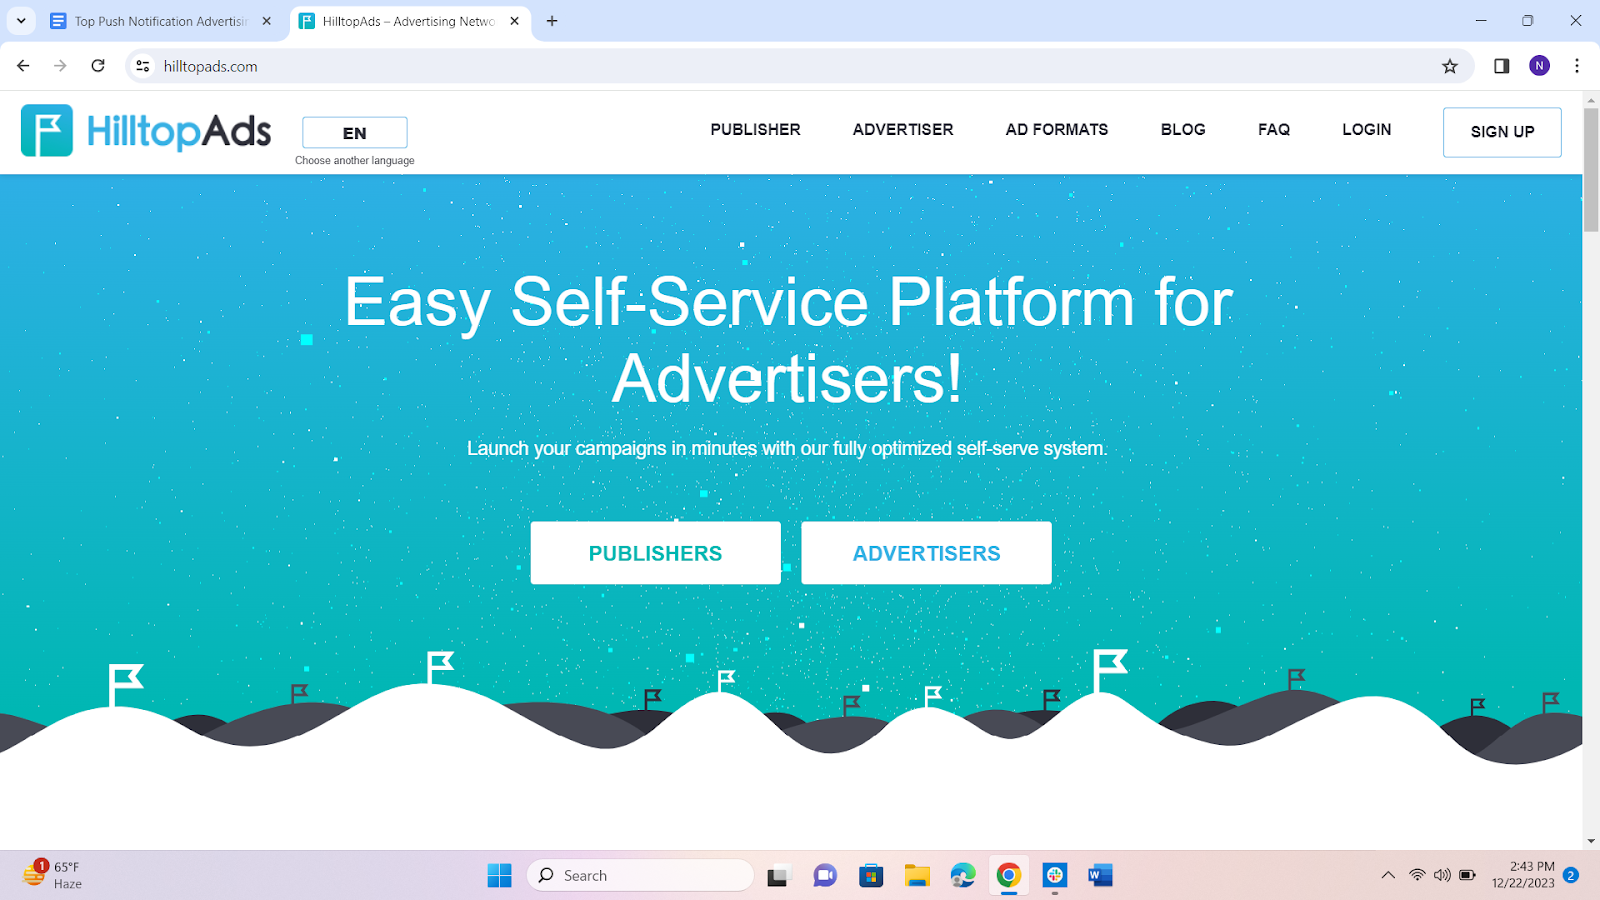 HilltopAds Push Advertising Platform